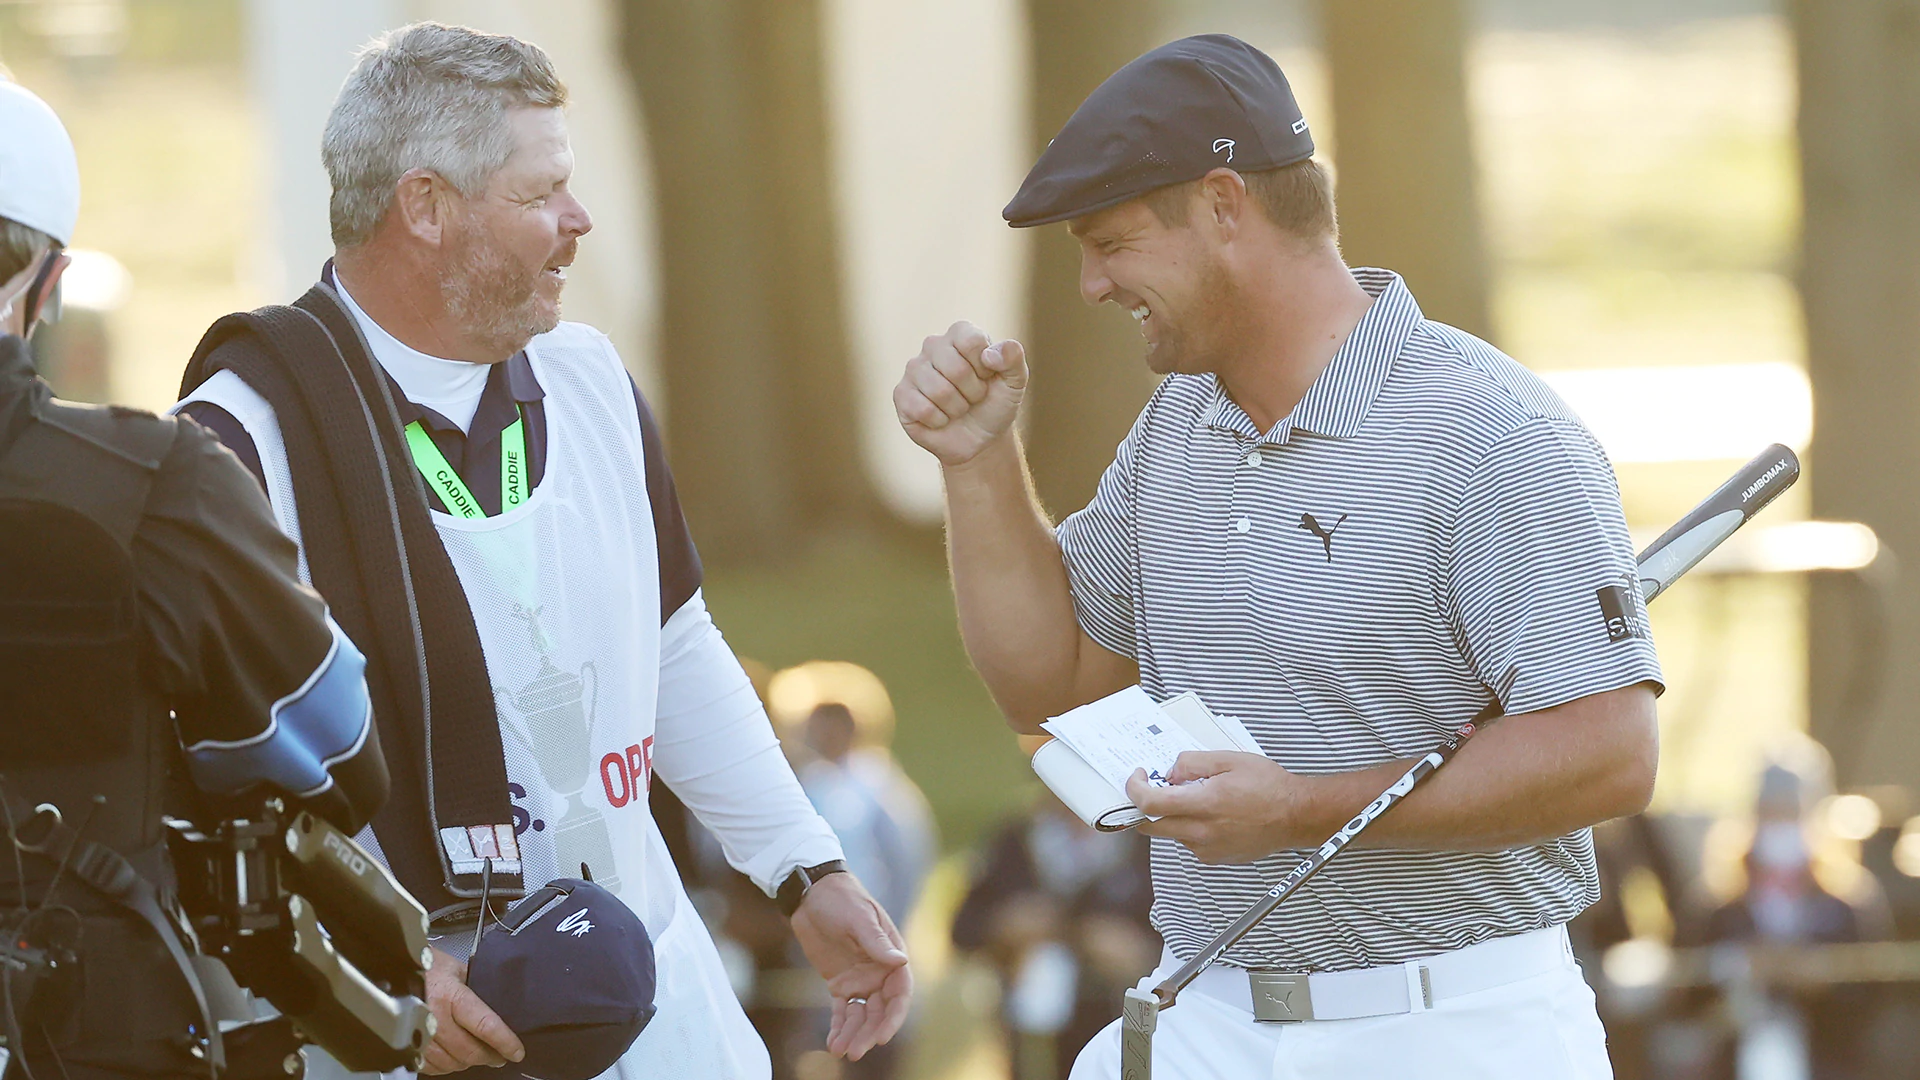 Tour pros, golf legends congratulate Bryson DeChambeau after U.S. Open win